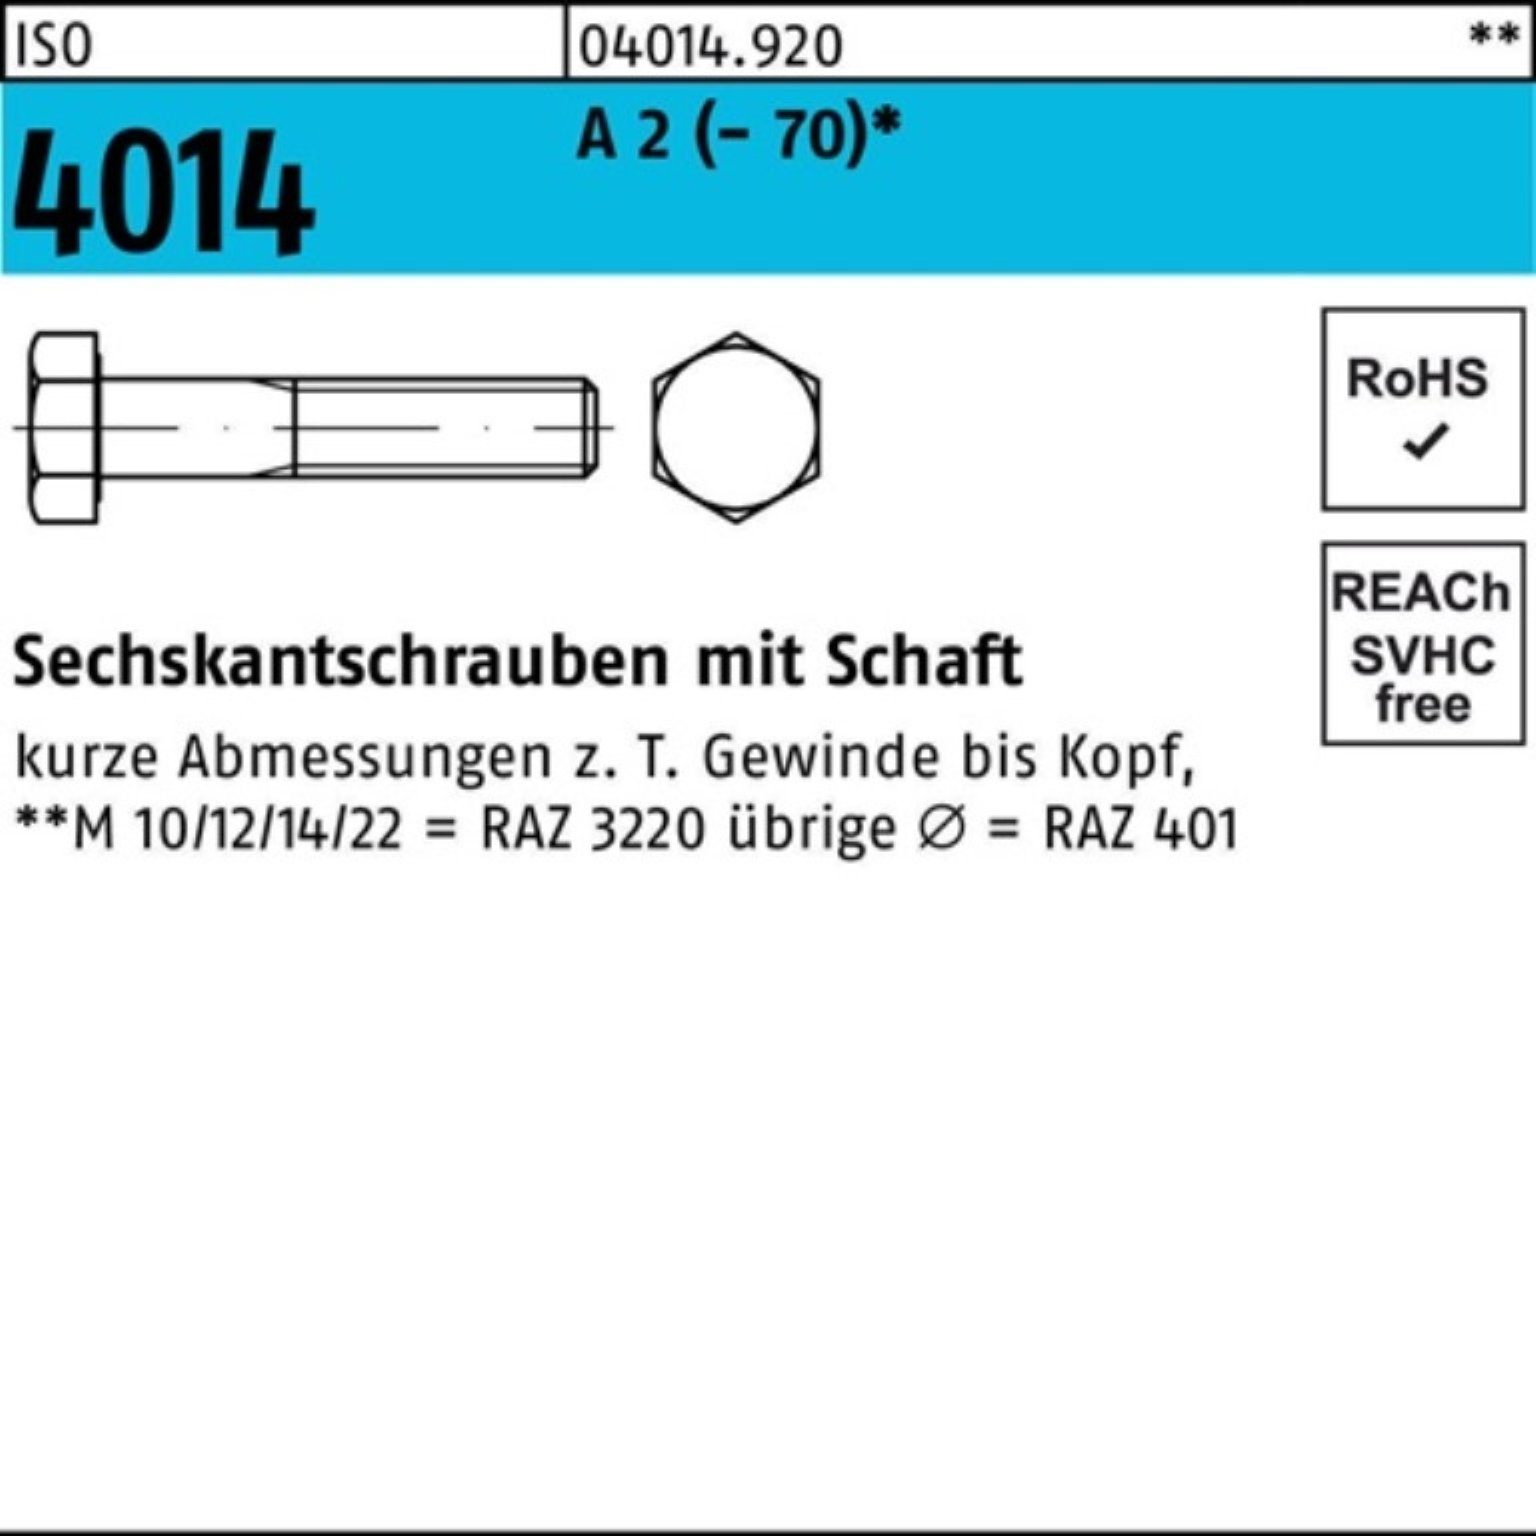 Bufab Sechskantschraube 100er Pack Sechskantschraube ISO 4014 Schaft M20x 200 A 2 (70) 1 St